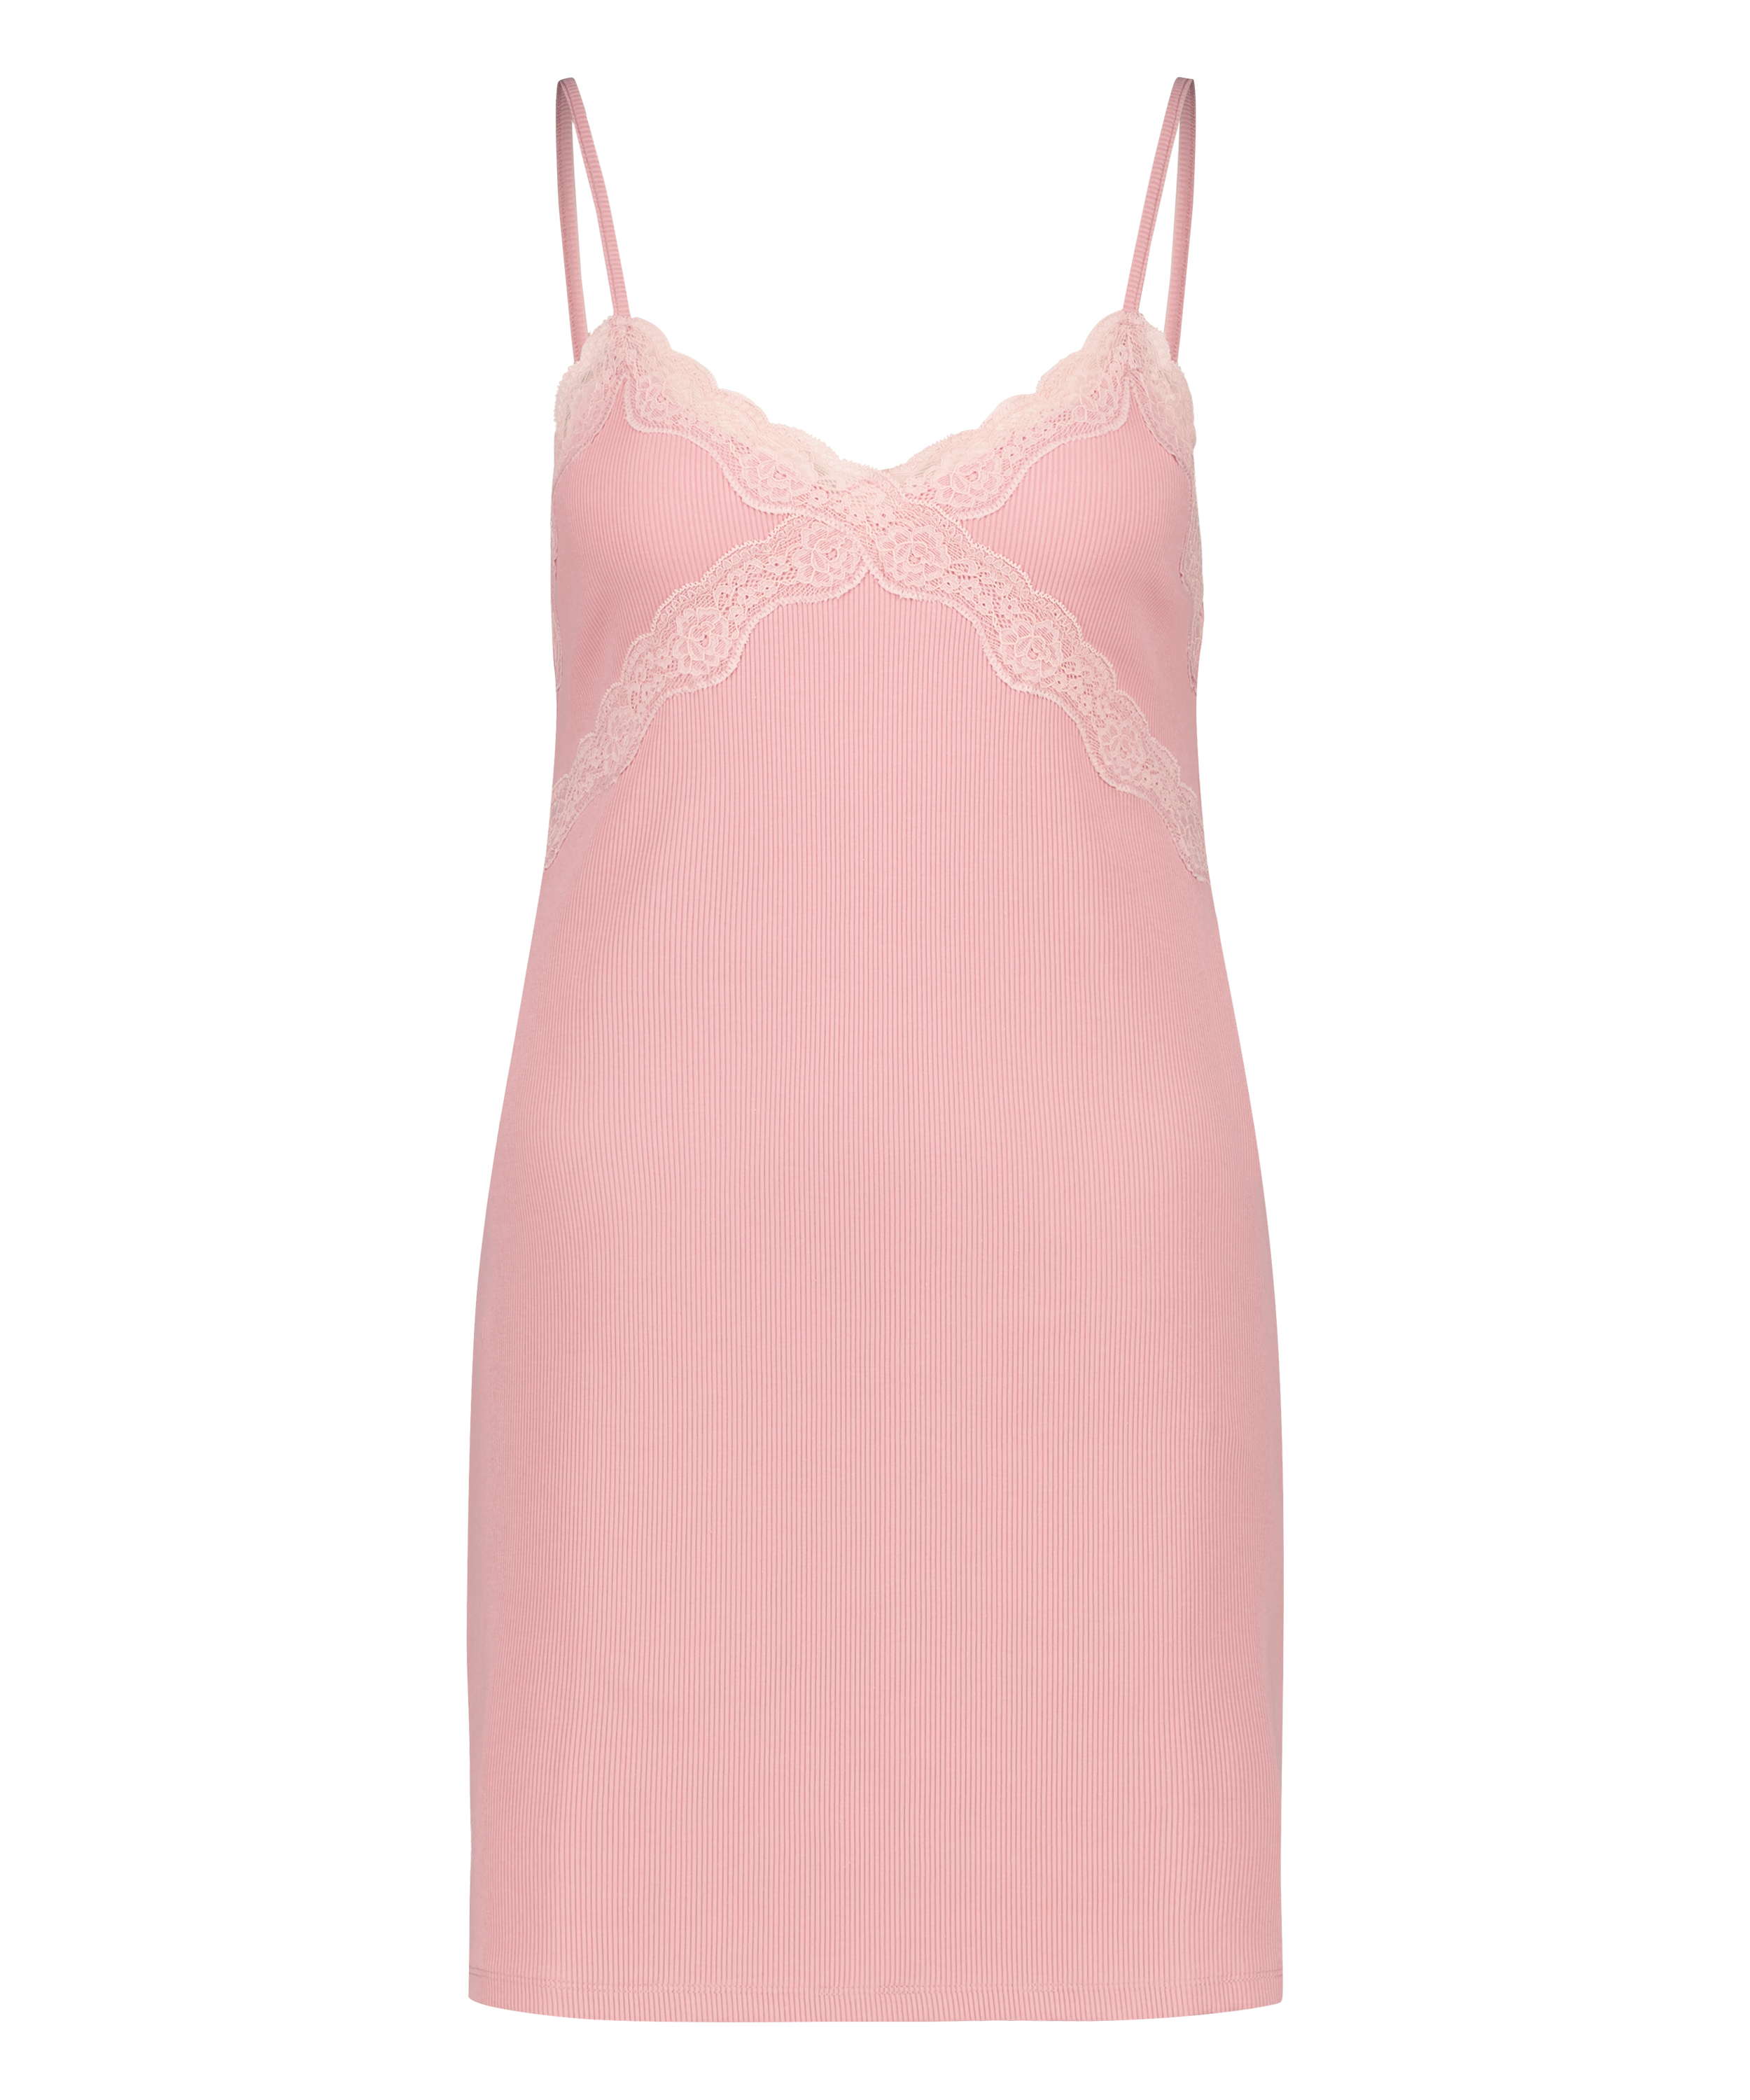 Lace Modal Dress, Pink, main